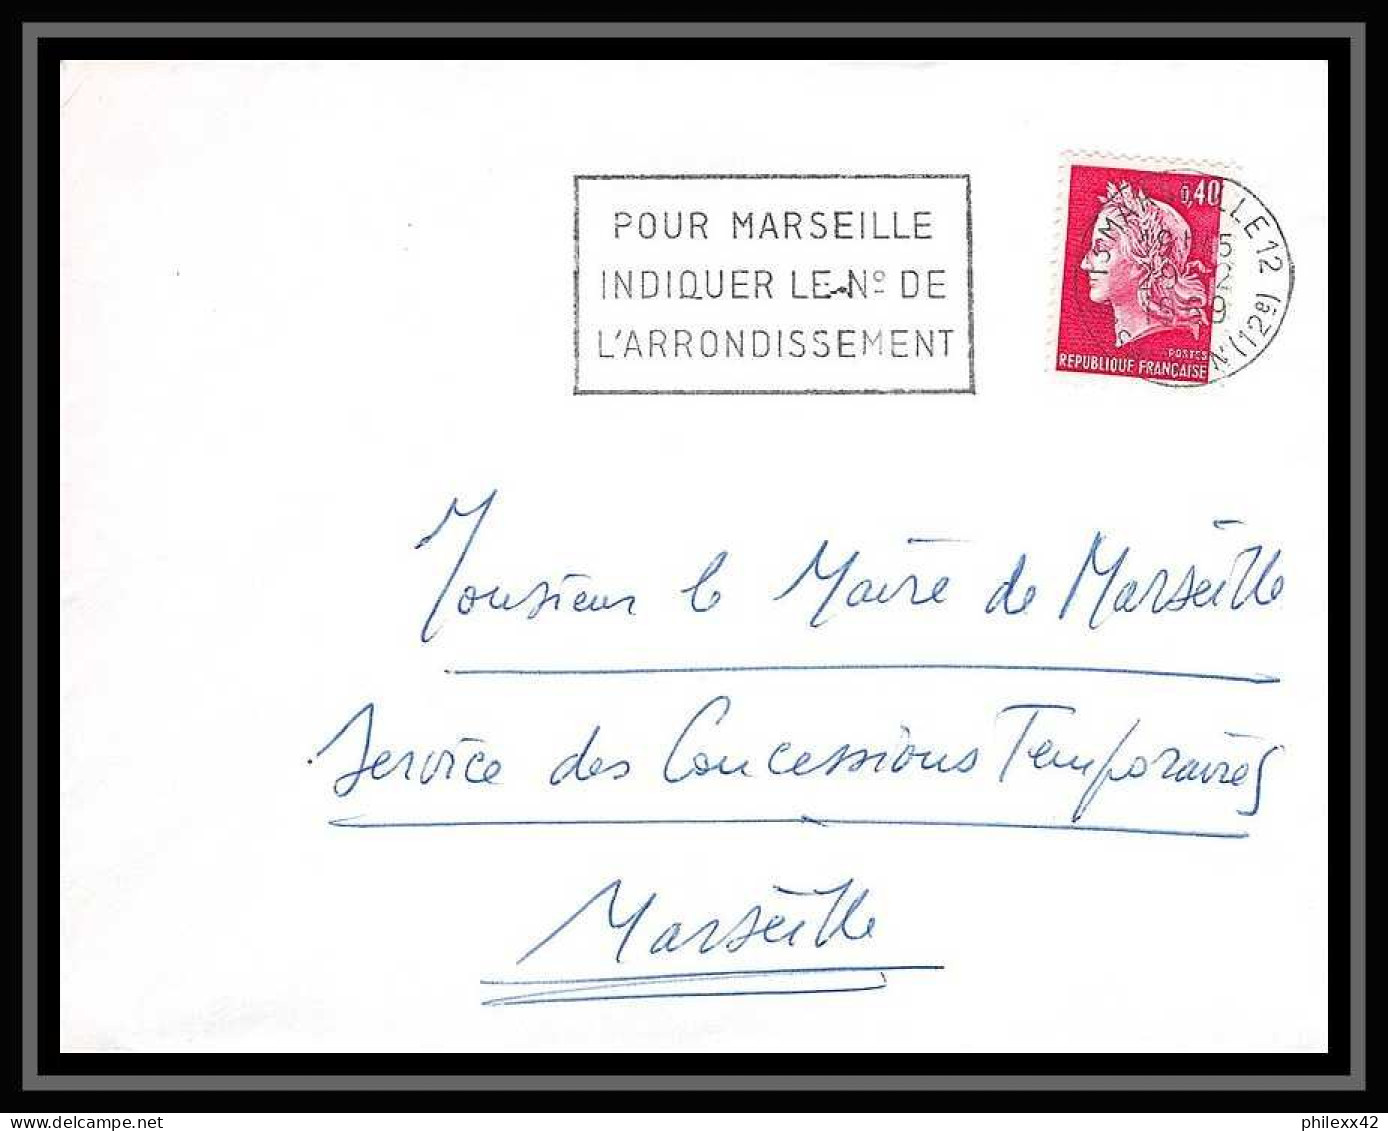 110730 lot de 14 Lettres Bouches du rhone Marseille Boulevard sauvan 